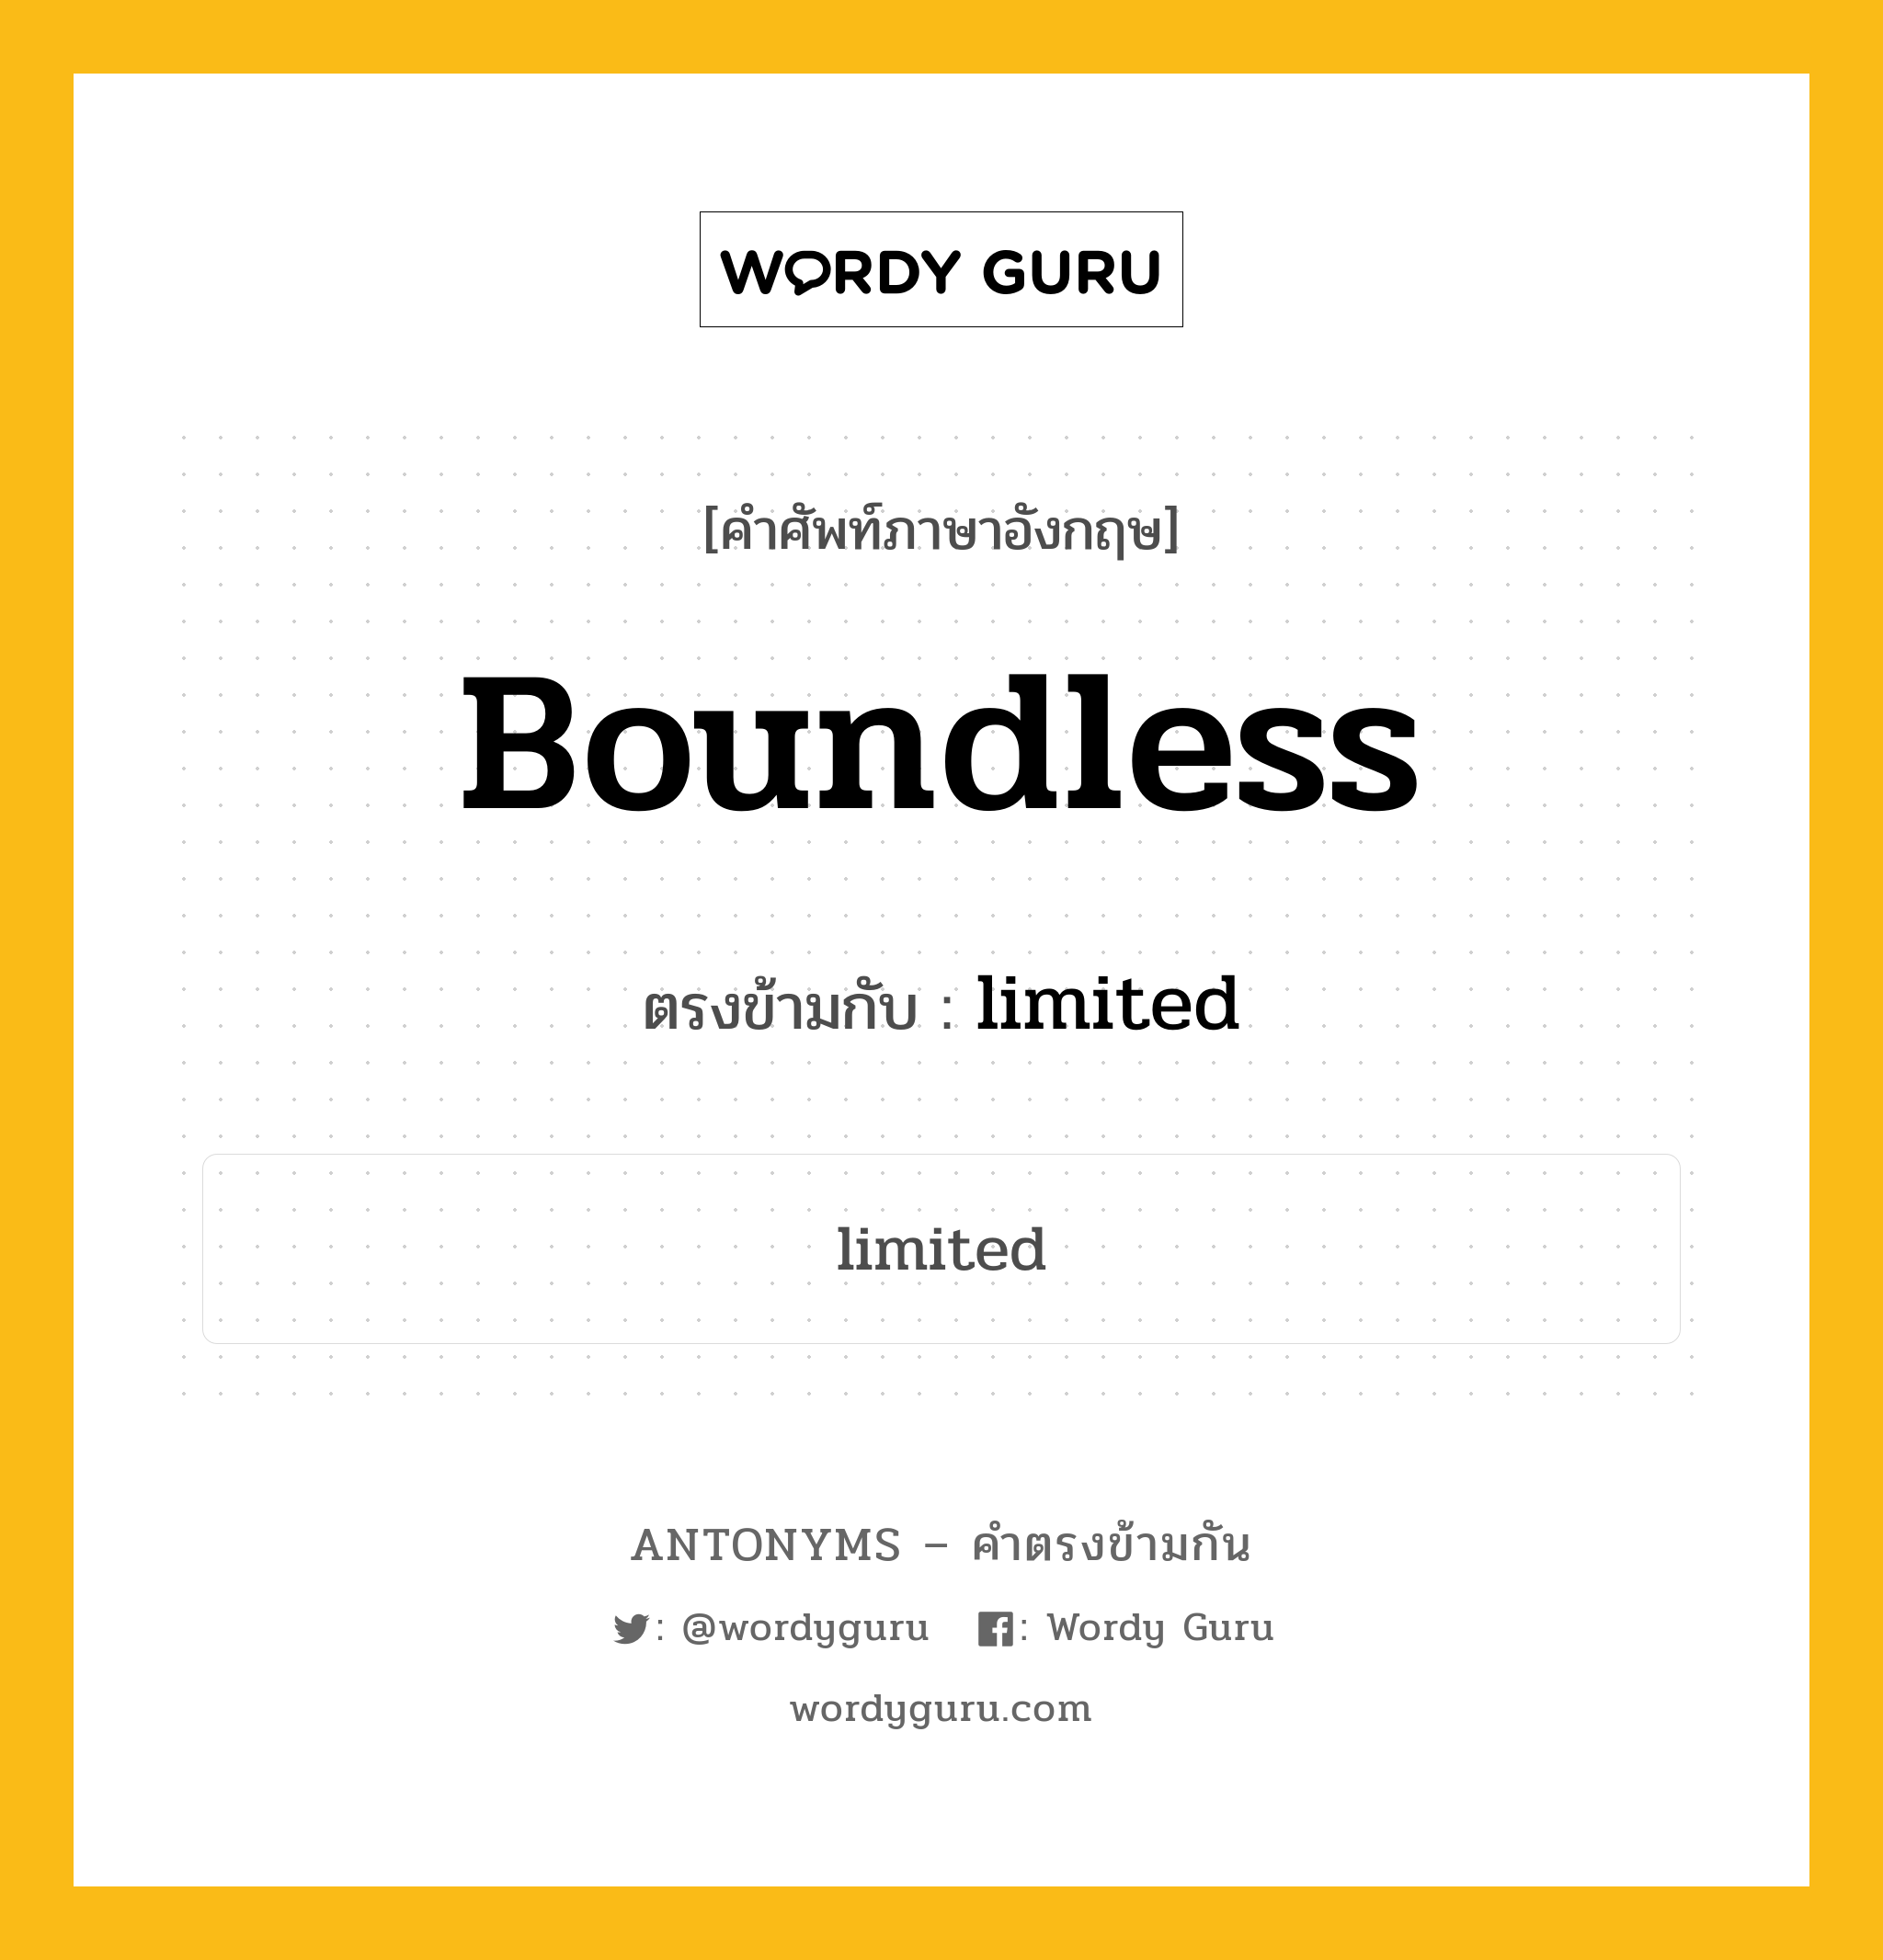 boundless เป็นคำตรงข้ามกับคำไหนบ้าง?, คำศัพท์ภาษาอังกฤษ boundless ตรงข้ามกับ limited หมวด limited